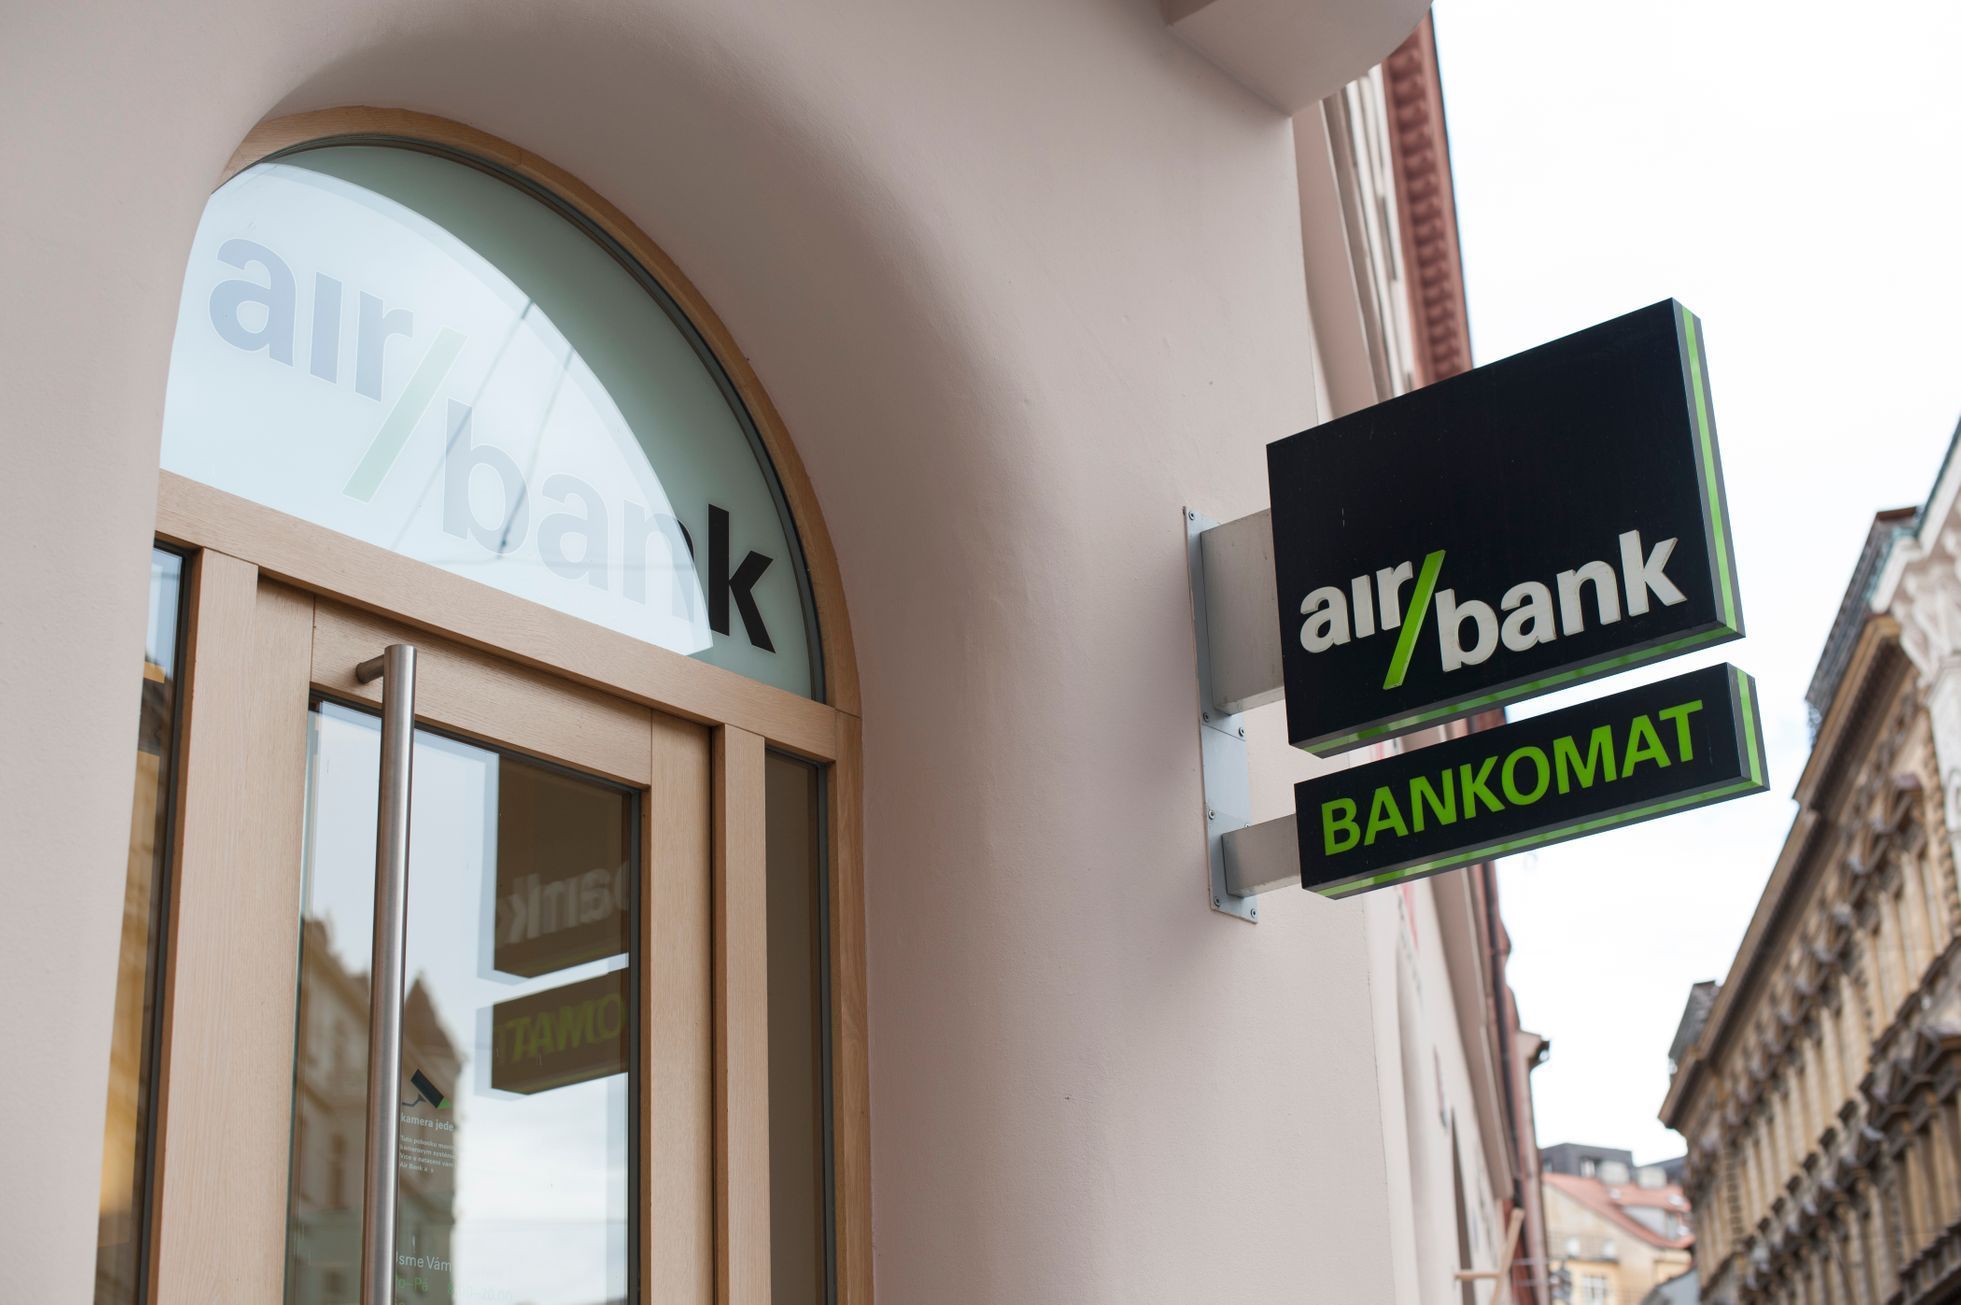 ilustrační fotografie, banka, Air bank, bankomat, 2017